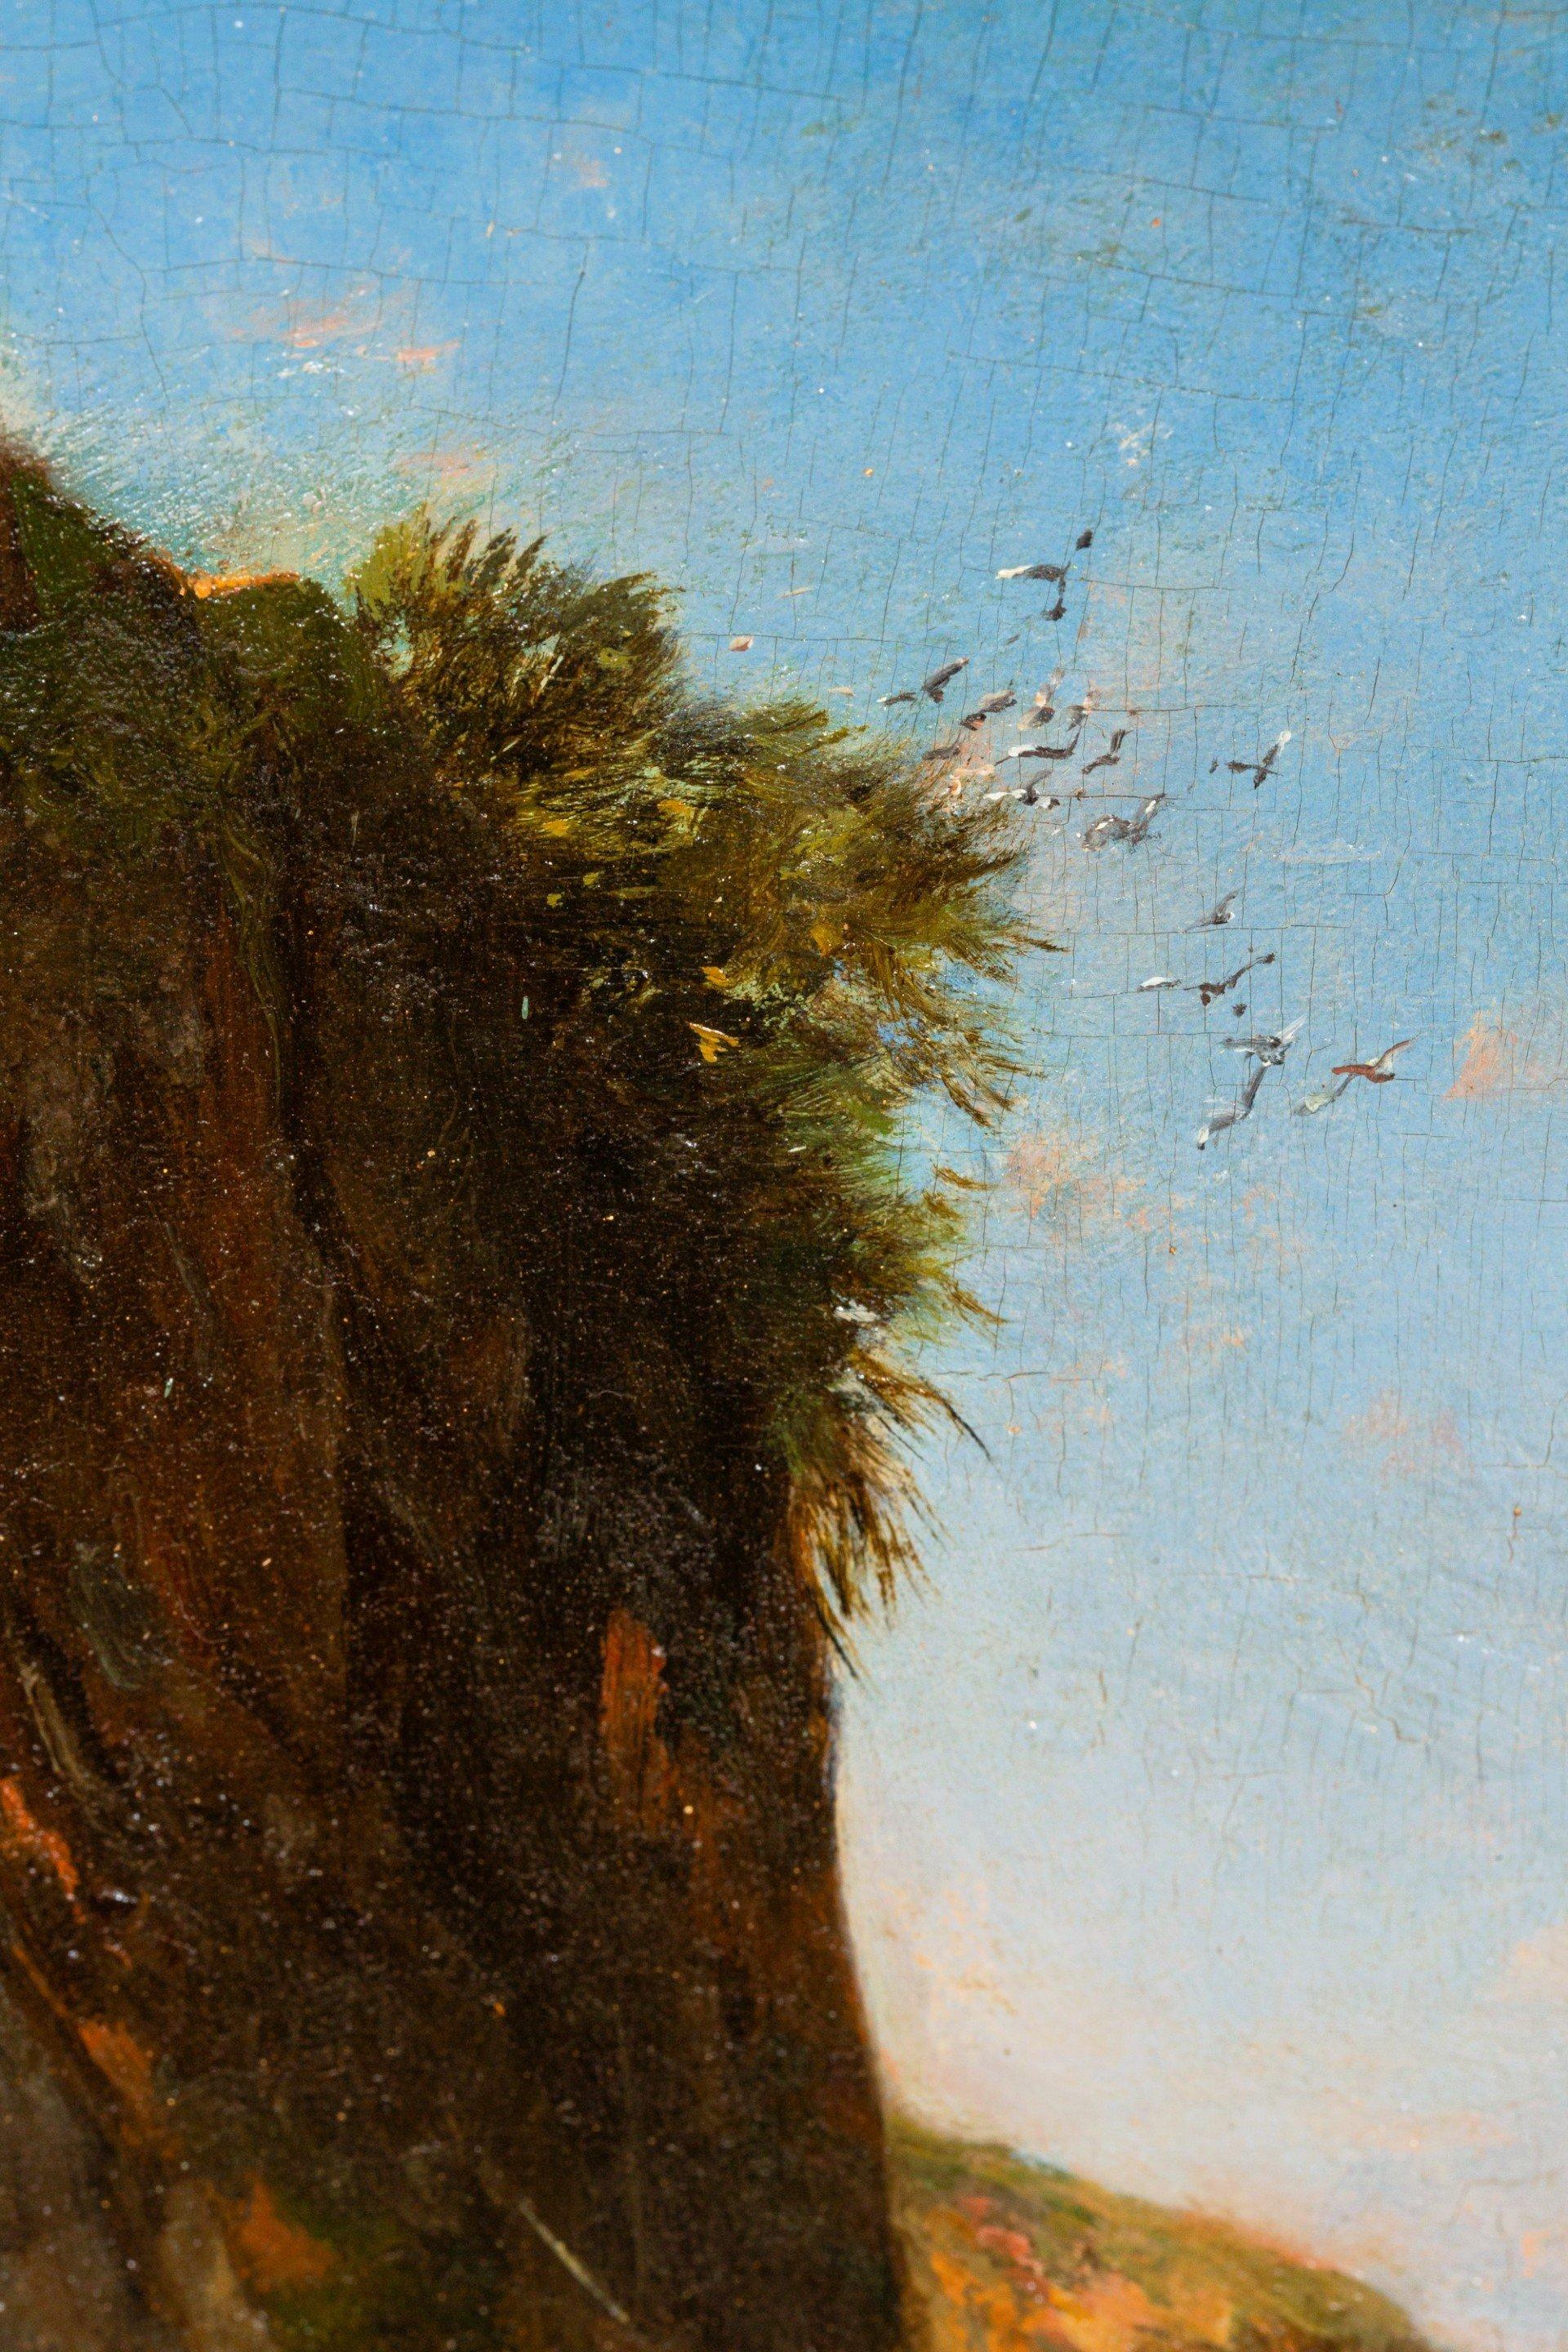 Cavaliers et bédouins marchants sur un chemin près d’une falaise.
(panneau 32 *20 cm) 
Honoré Boze est un peintre orientaliste français, né à l'île Maurice le 19 avril 1830, et mort à Marseille le 5 janvier 1909 (à 78 ans). Petit-neveu du peintre